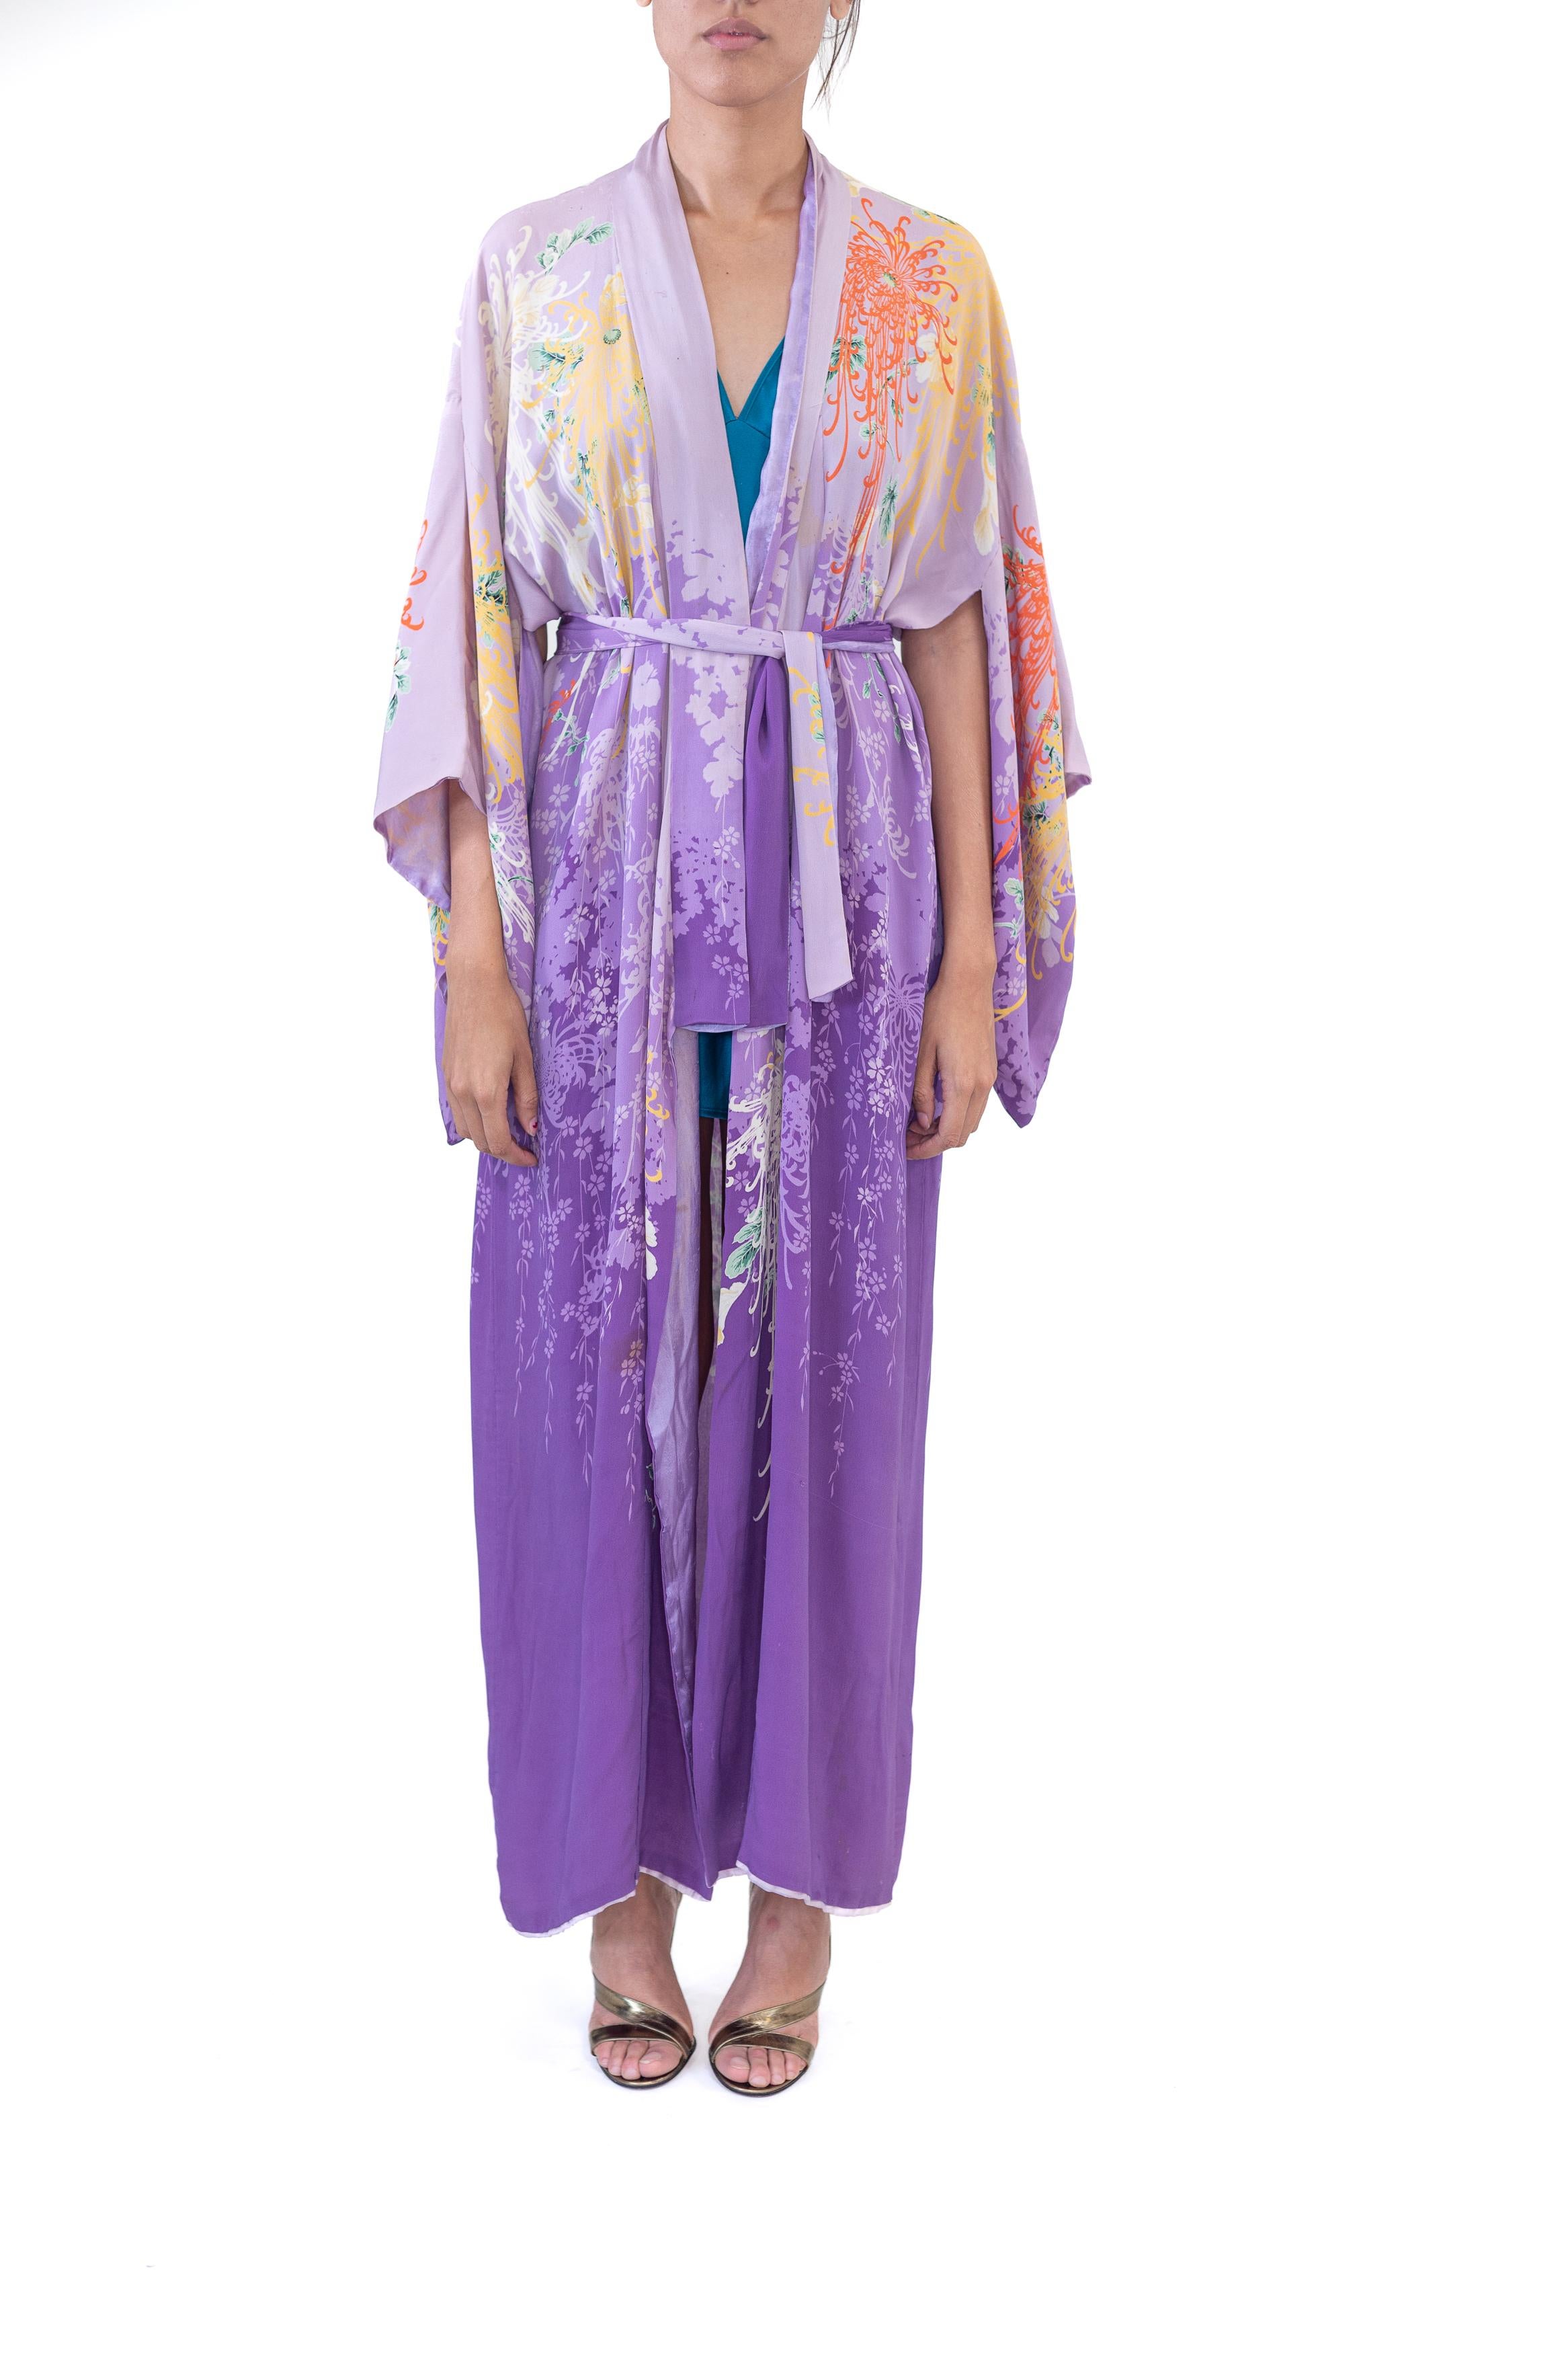 Ce kimono est aussi rare qu'il est d'une beauté stupéfiante. Il nous fallait donc l'avoir. Habituellement, chez Morphew, nous ne proposons que des pièces en parfait état. Cependant, la beauté de cette impression nous fait passer outre les signes